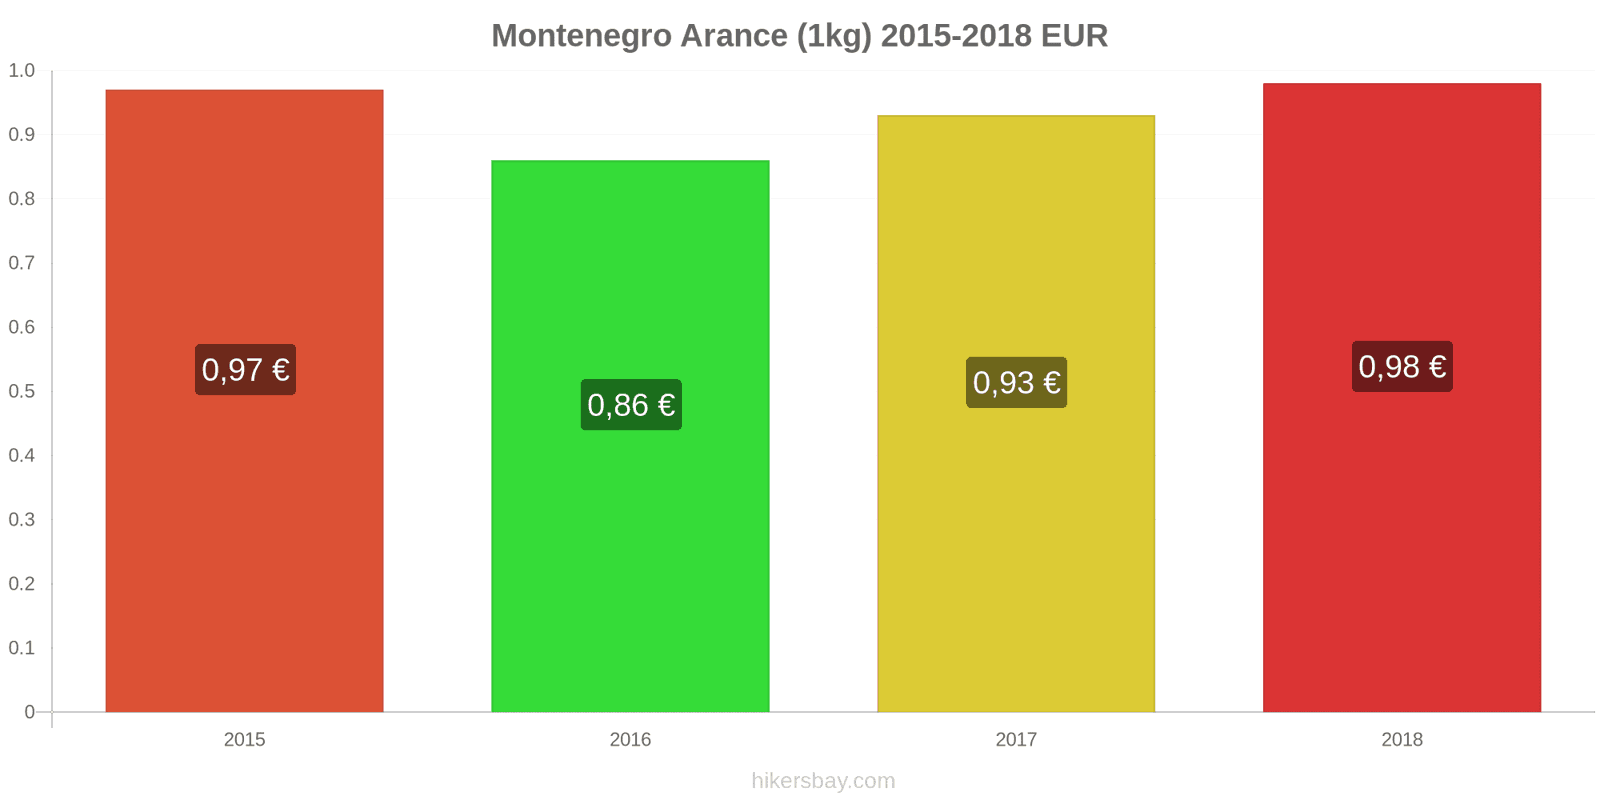 Montenegro cambi di prezzo Arance (1kg) hikersbay.com